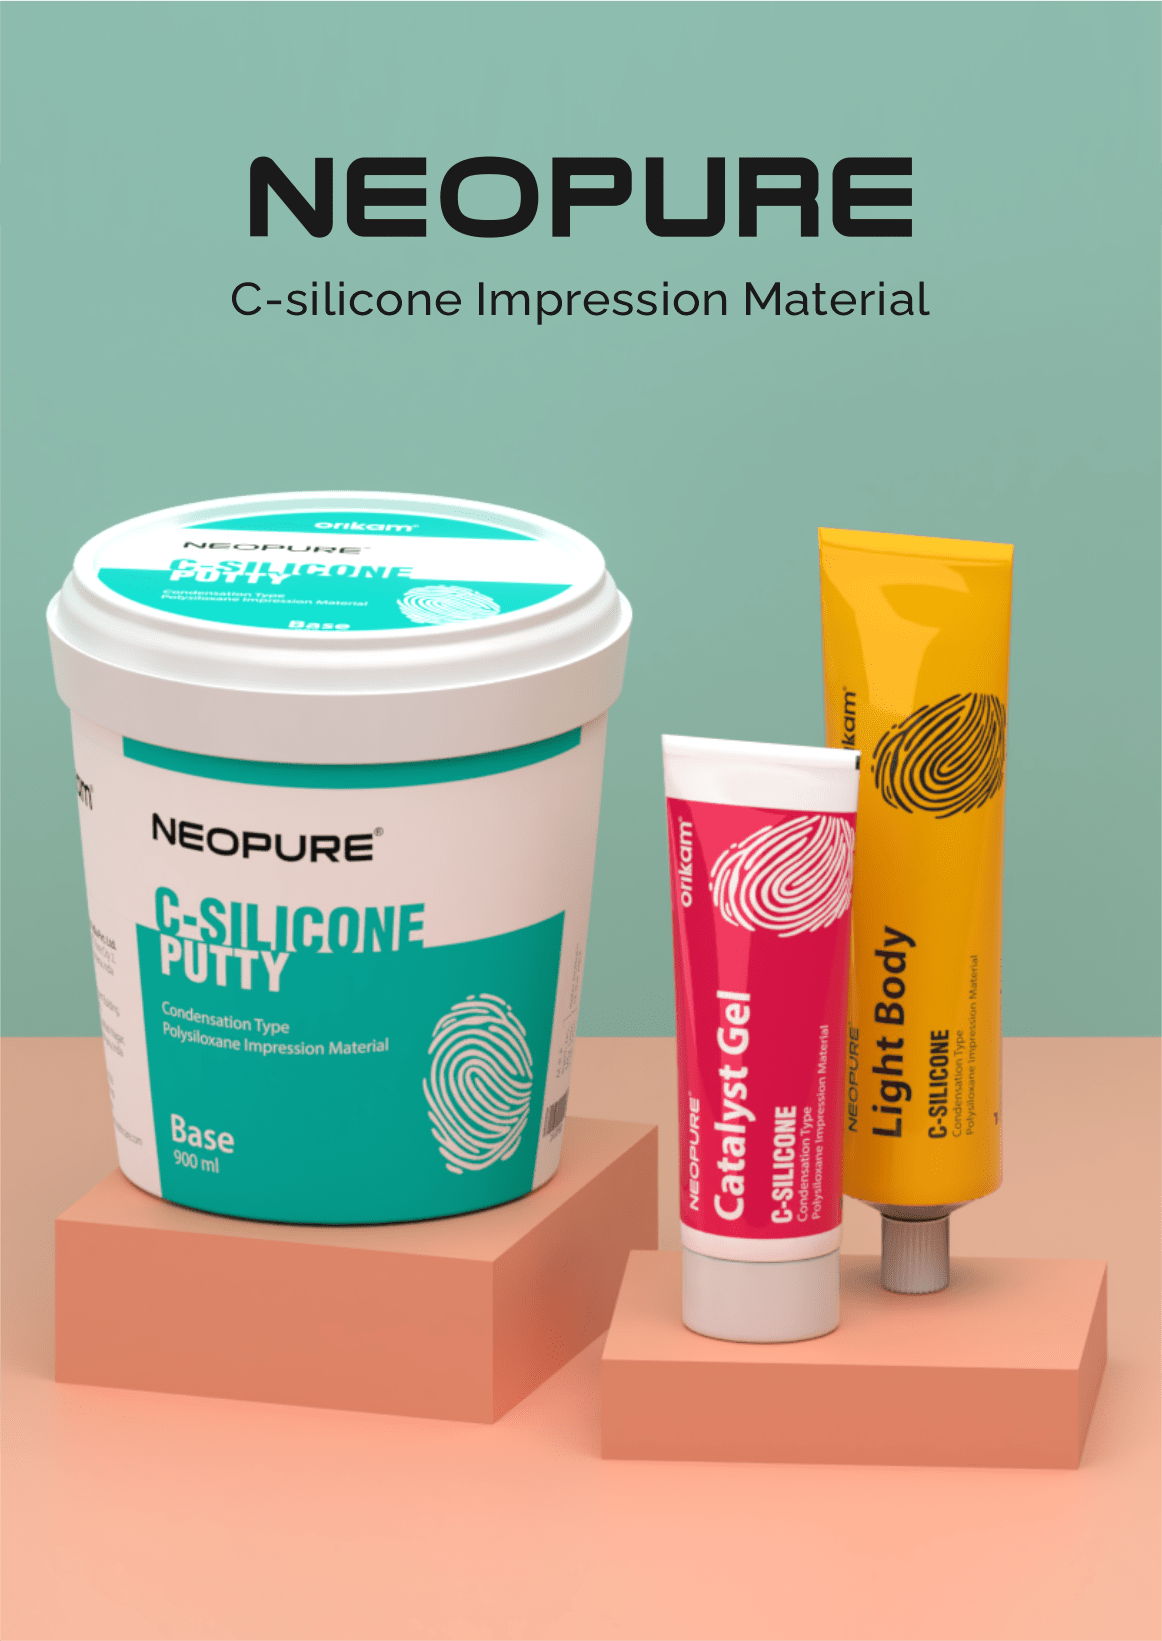 Neopure C-Silicone Impression Materials